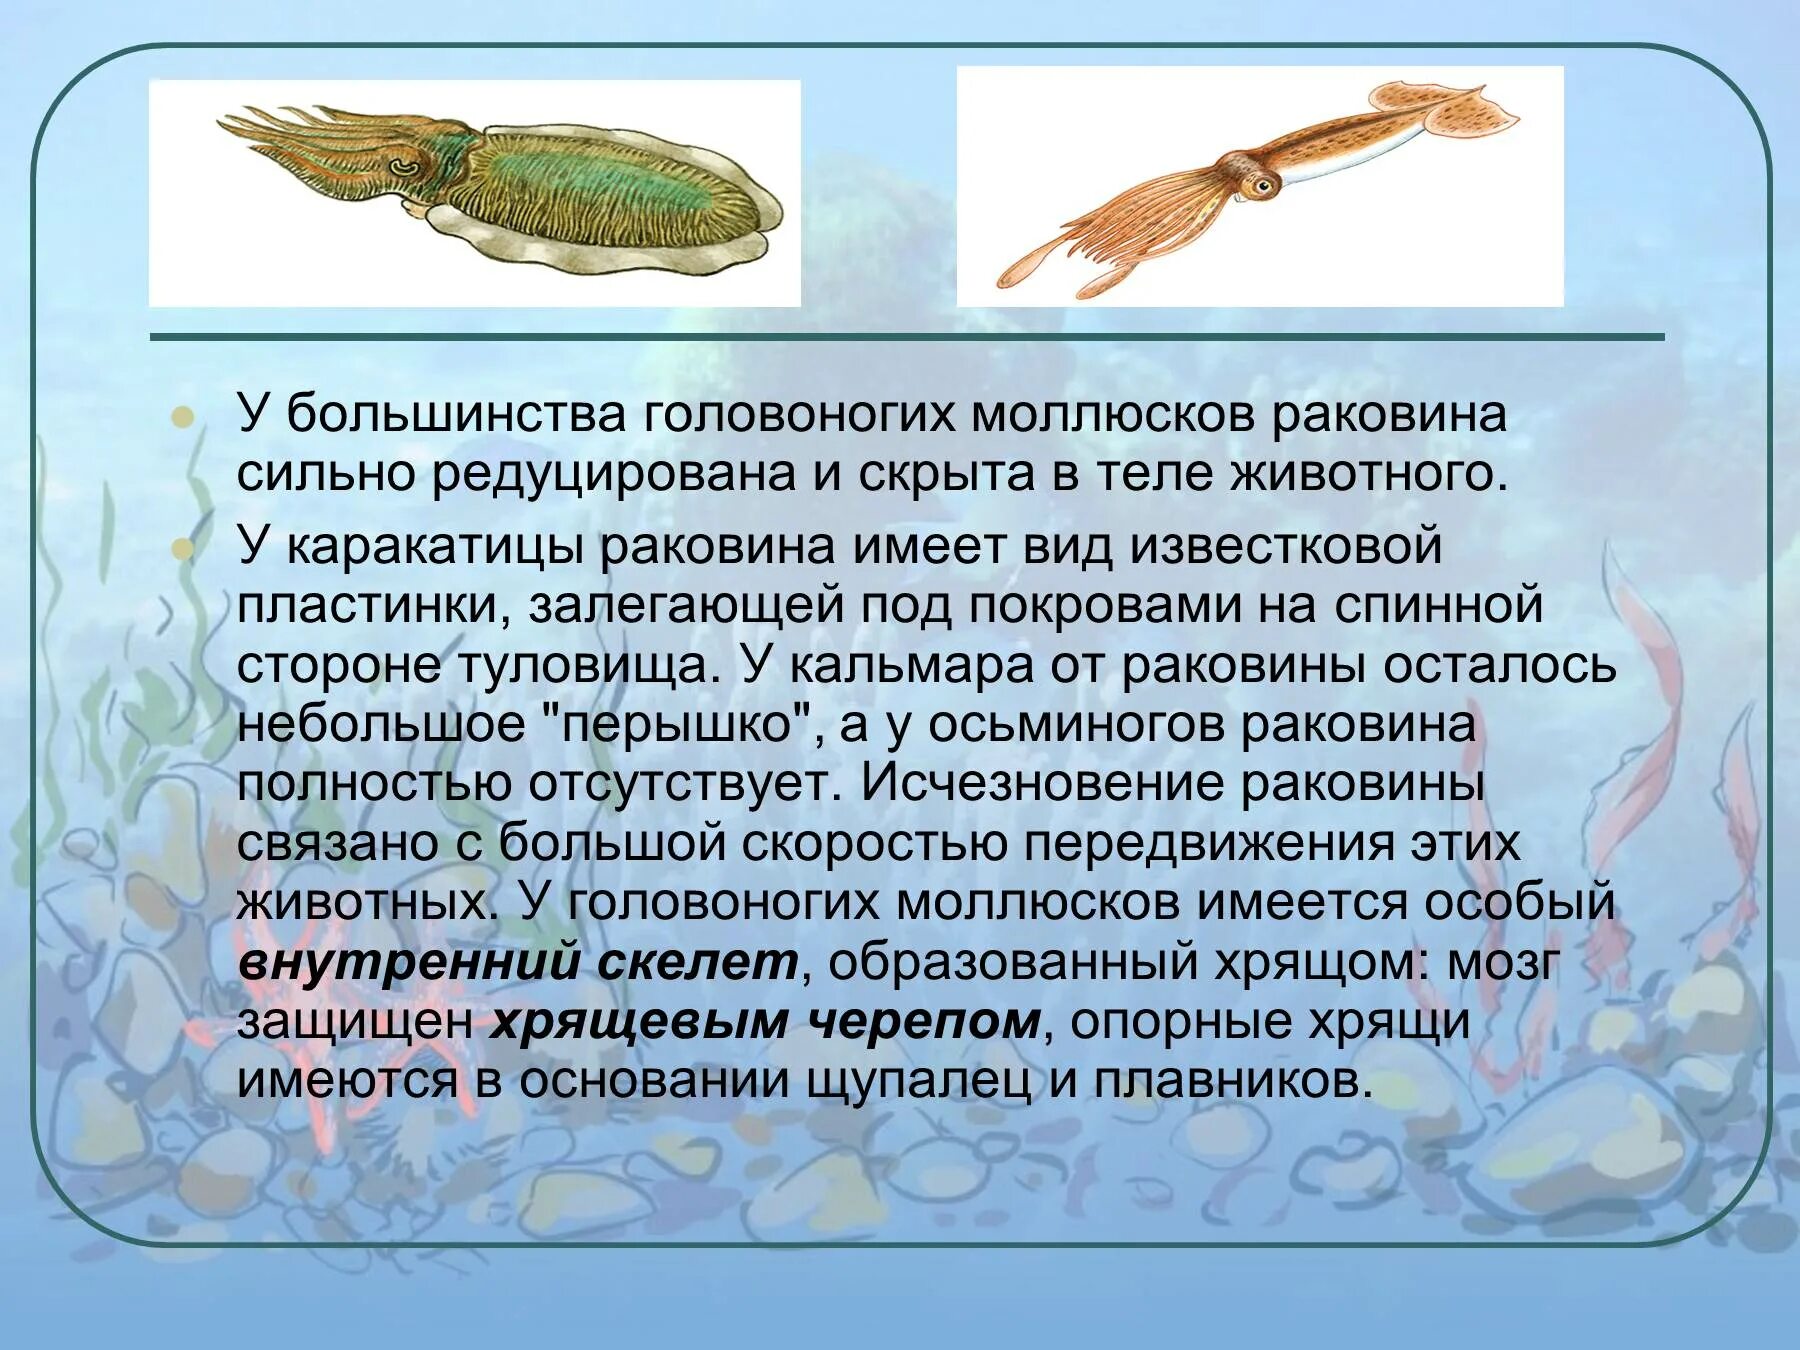 Редукция раковины у моллюсков